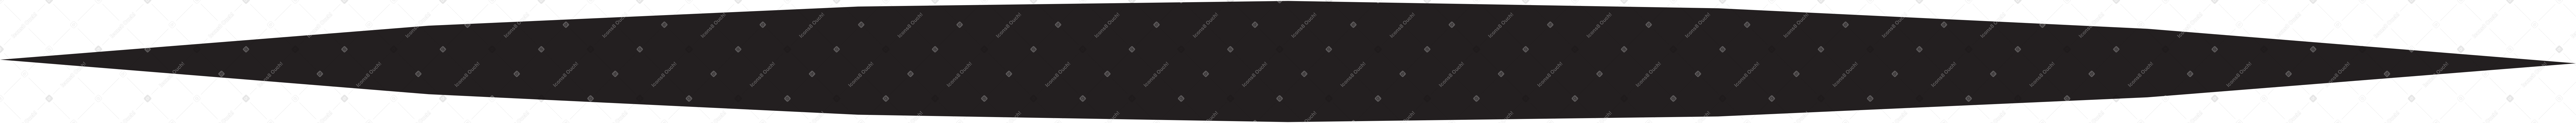 背景の黒い影 PNG、SVG